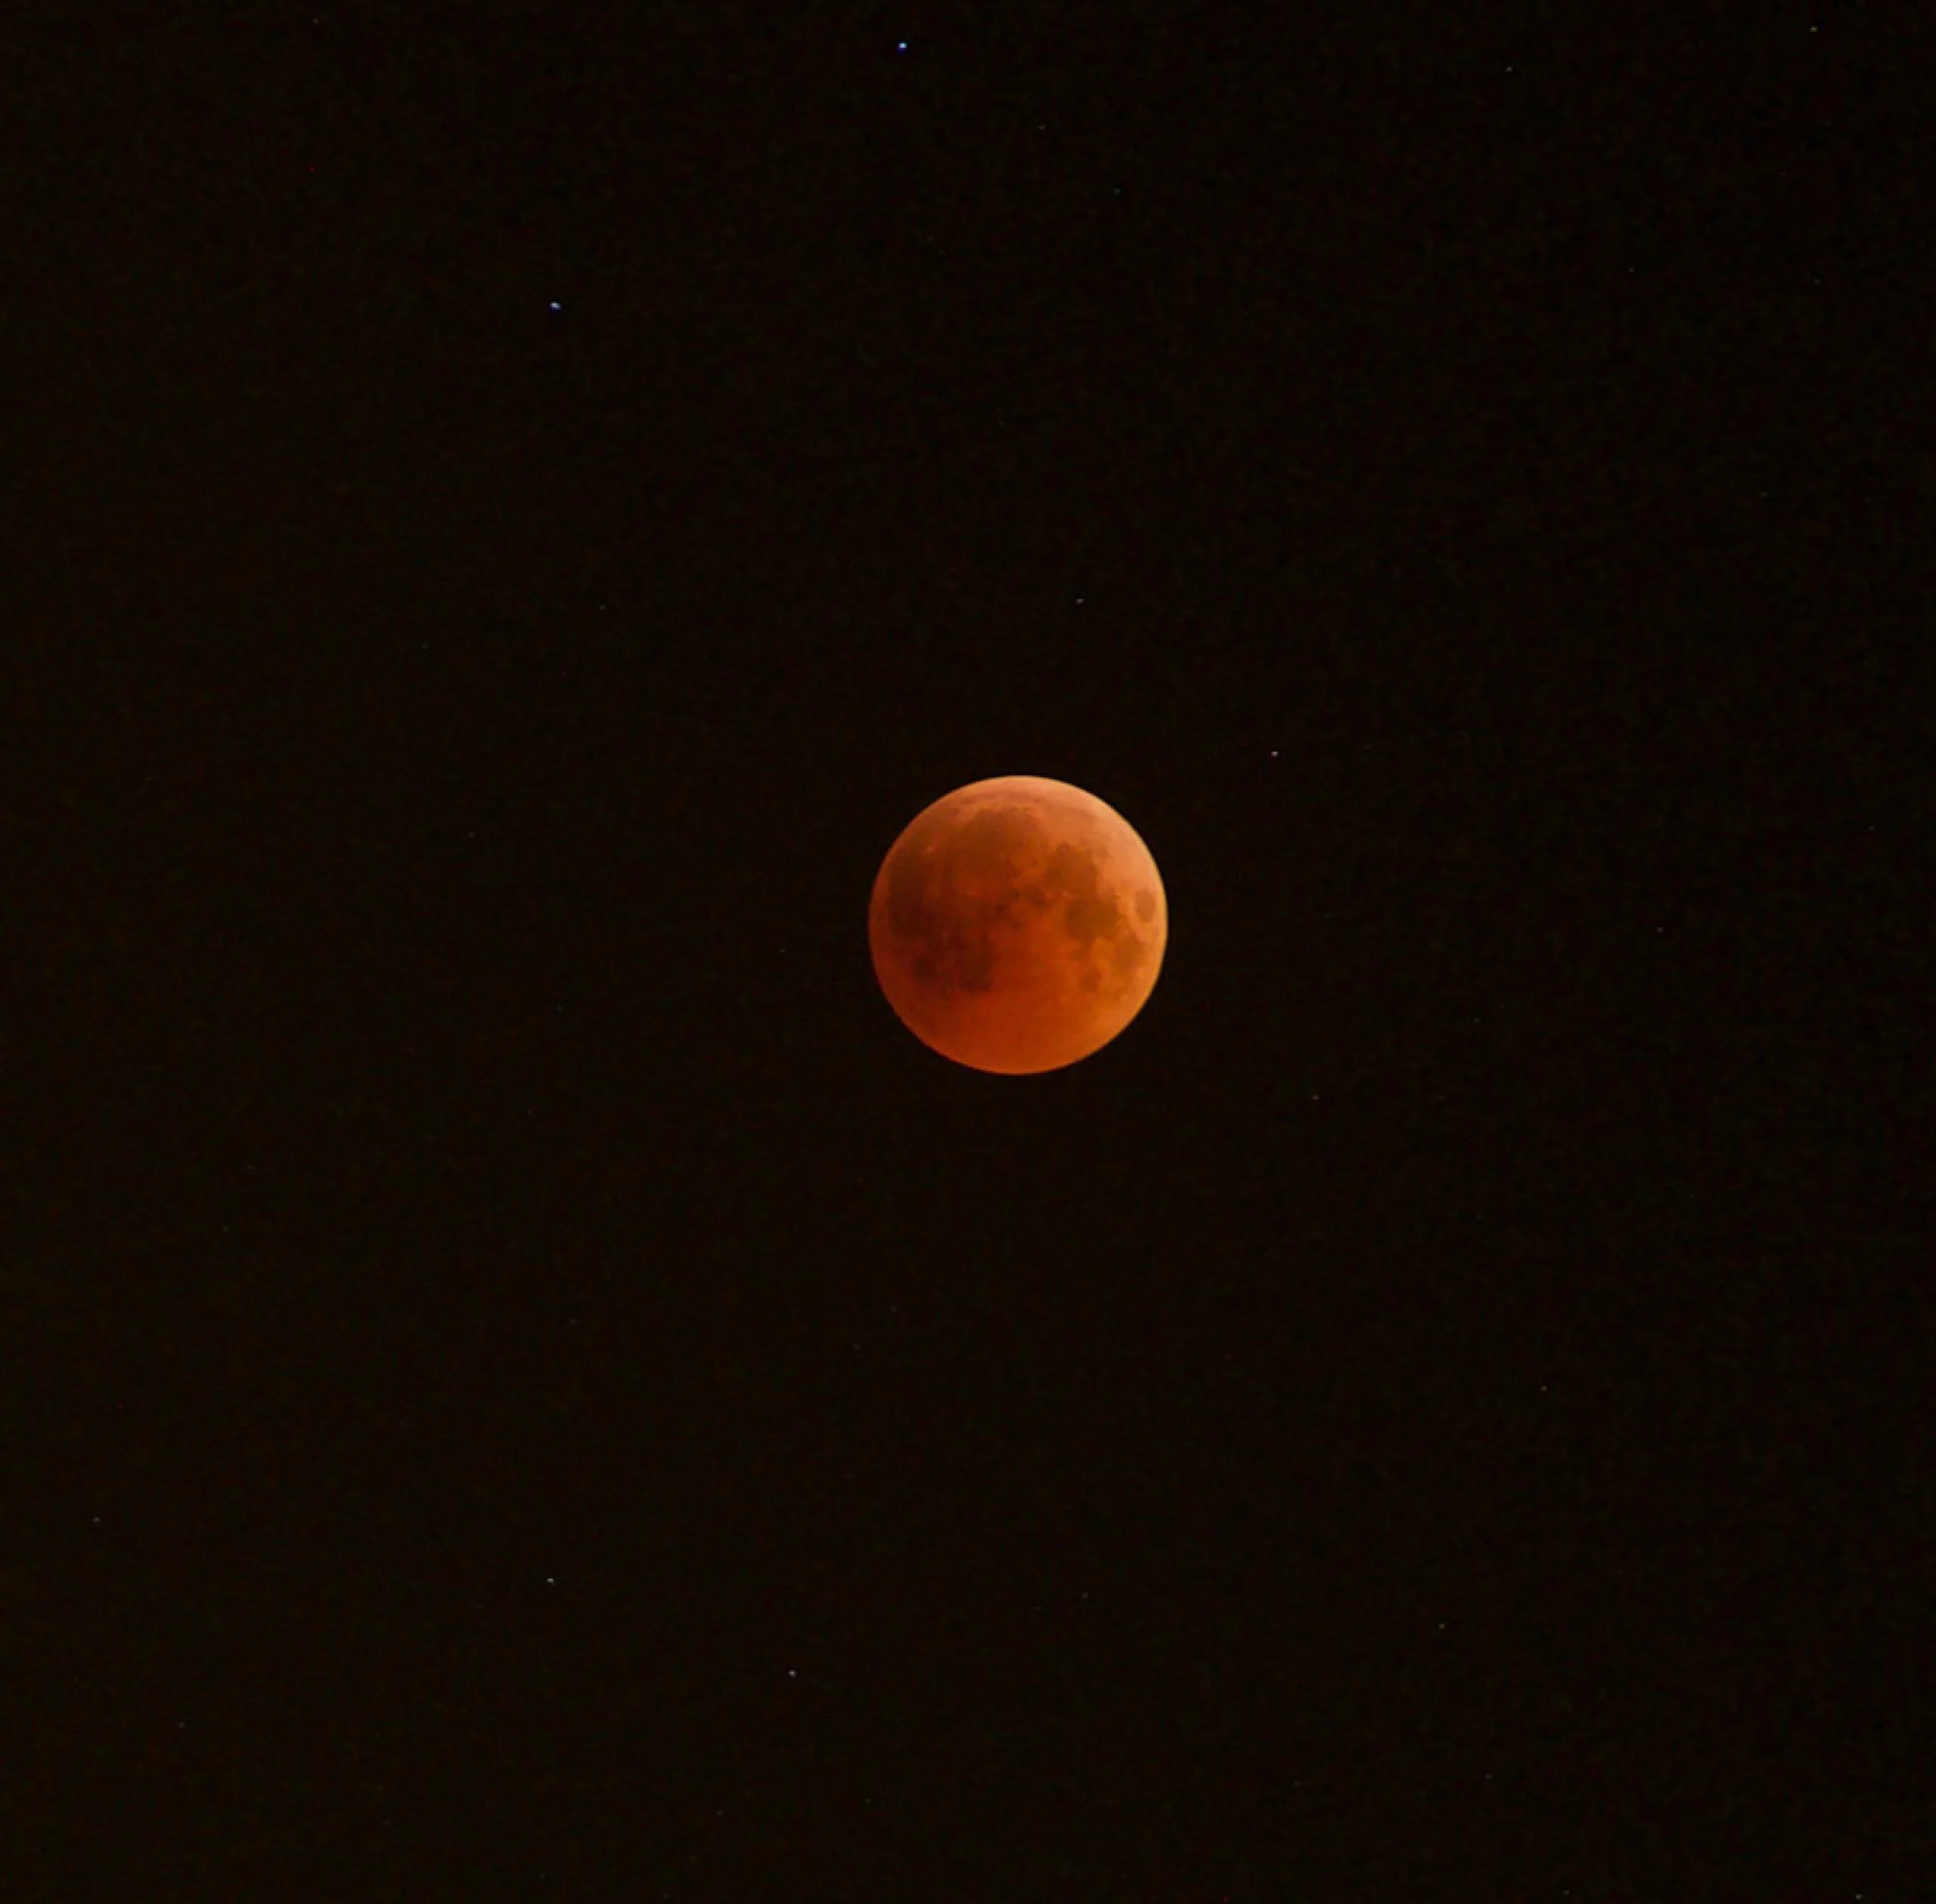 La Luna aparece de color rojizo en esta imagen del eclipse lunar total del 27 de julio de 2018 desde el desierto en Abu Dhabi, Emiratos Árabes Unidos.